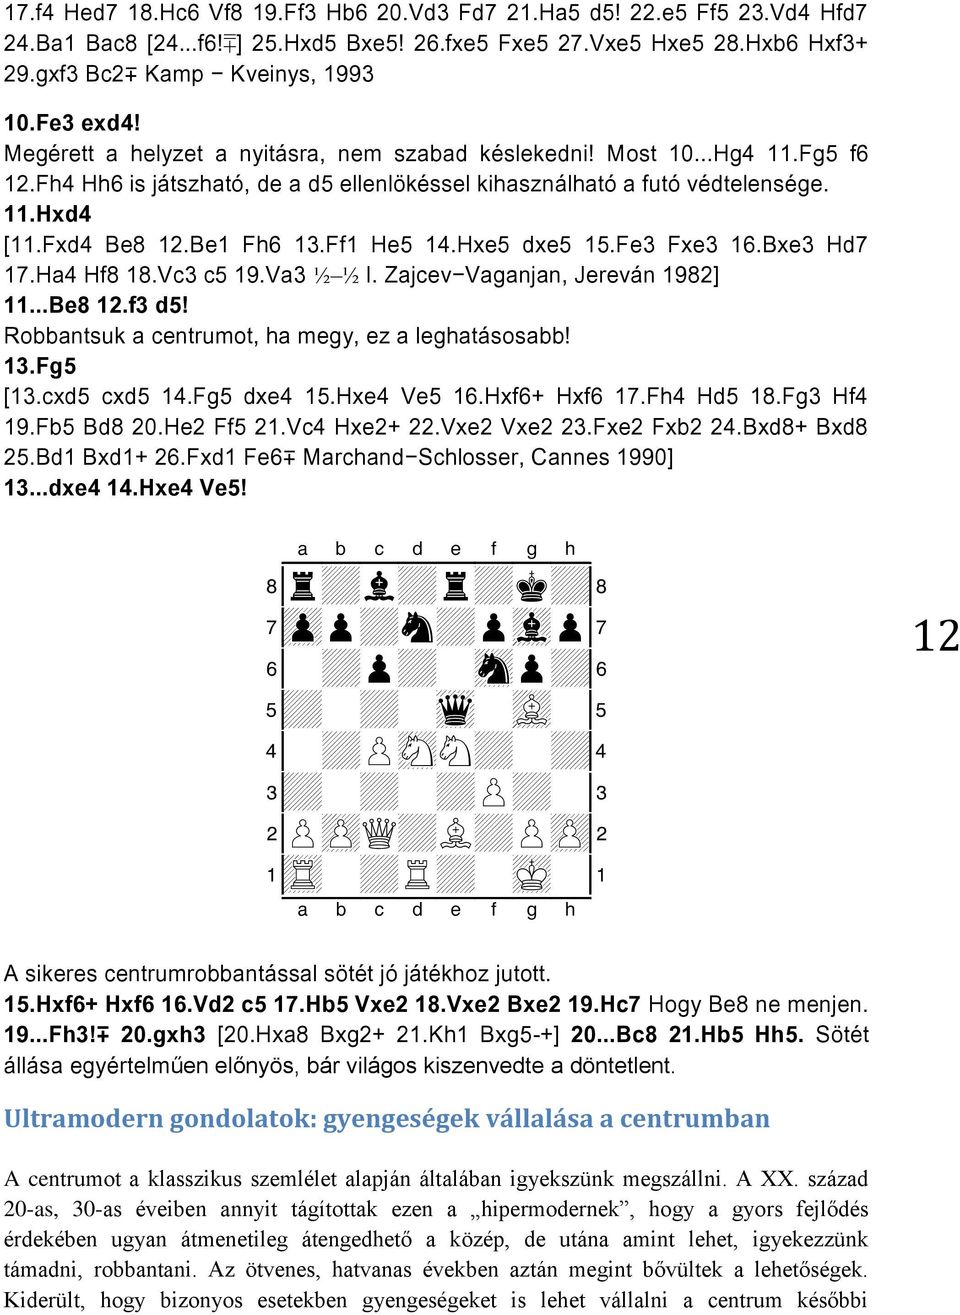 Be1 Fh6 13.Ff1 He5 14.Hxe5 dxe5 15.Fe3 Fxe3 16.Bxe3 Hd7 17.Ha4 Hf8 18.Vc3 c5 19.Va3 I. Zajcev-Vaganjan, Jereván 1982] 11...Be8 12.f3 d5! Robbantsuk a centrumot, ha megy, ez a leghatásosabb! 13.Fg5 [13.